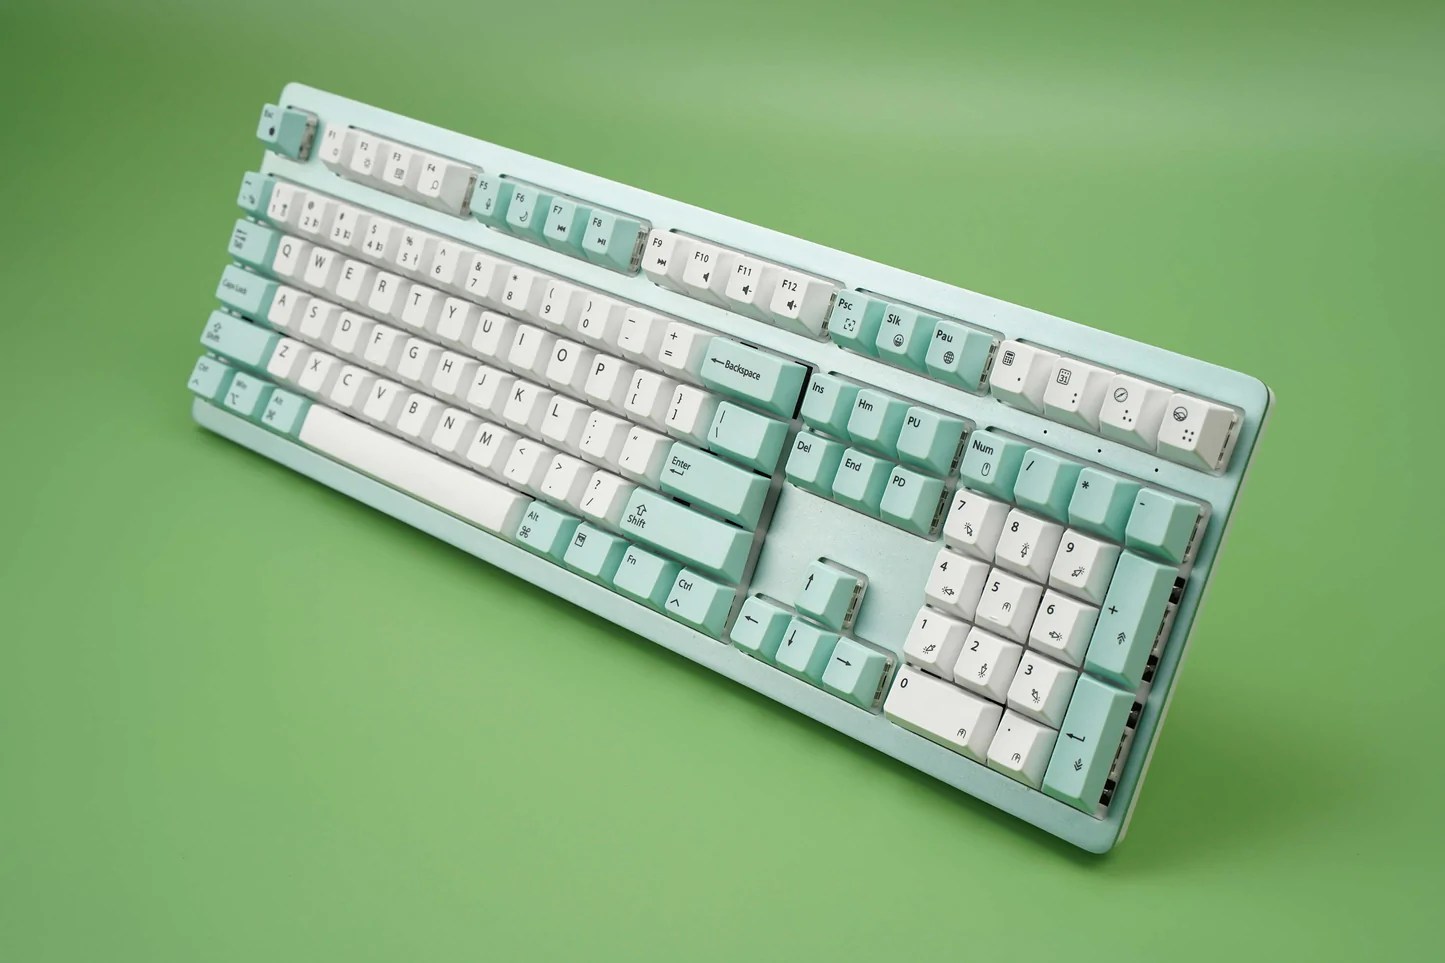  Wombat Pine Professional - Meilleur clavier mécanique pour les utilisateurs de Mac